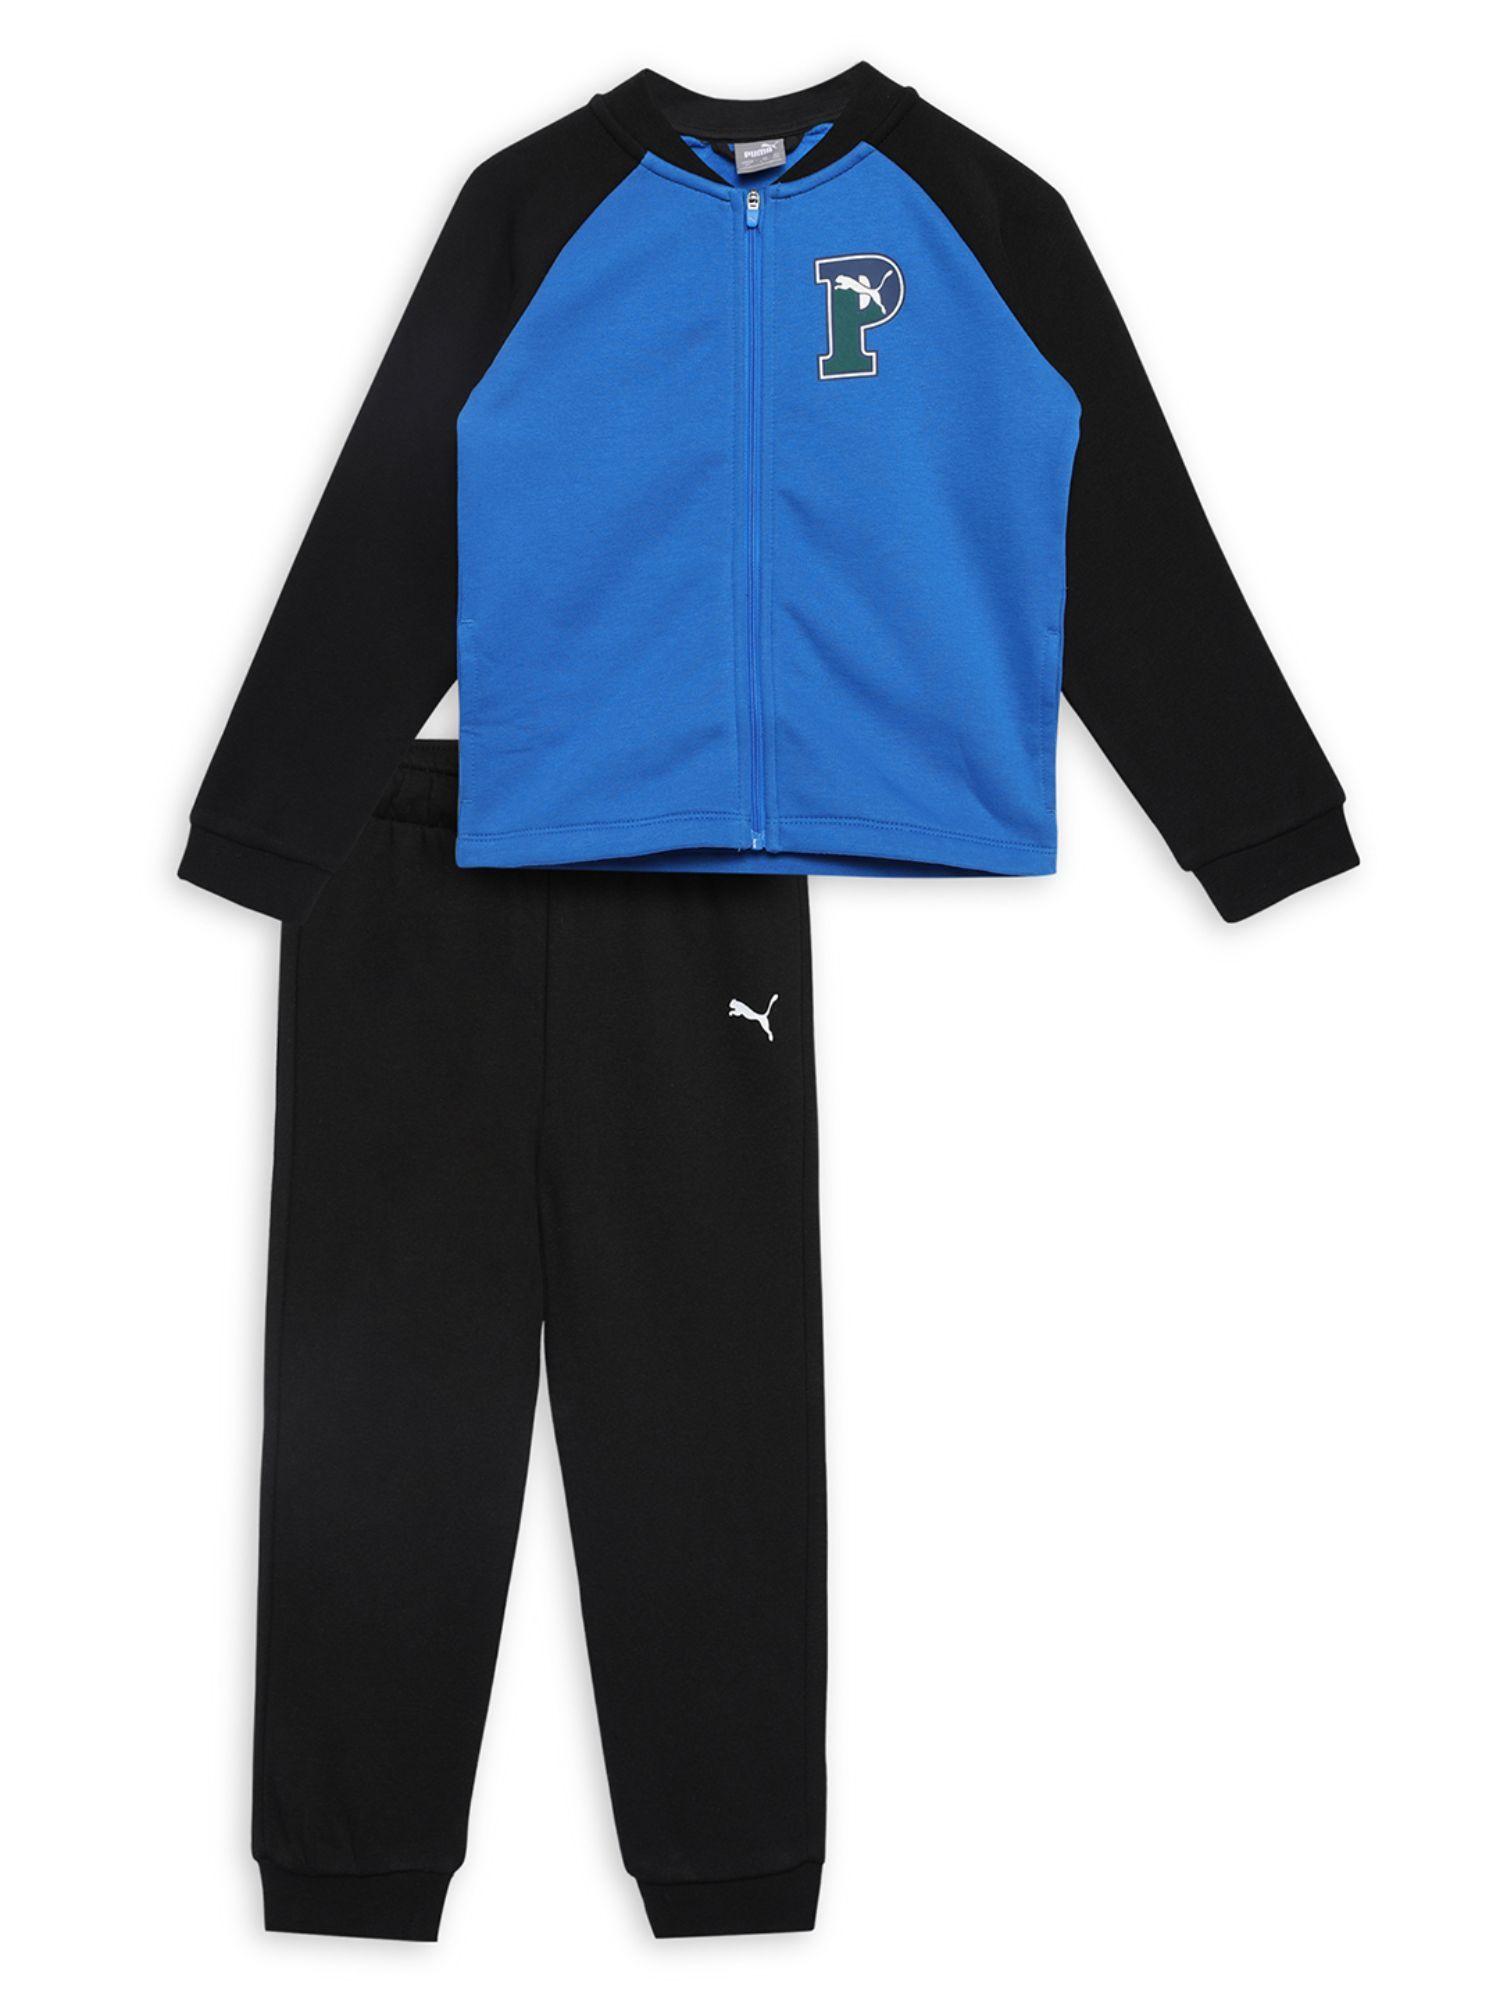 minicats squad unisex blue track suit